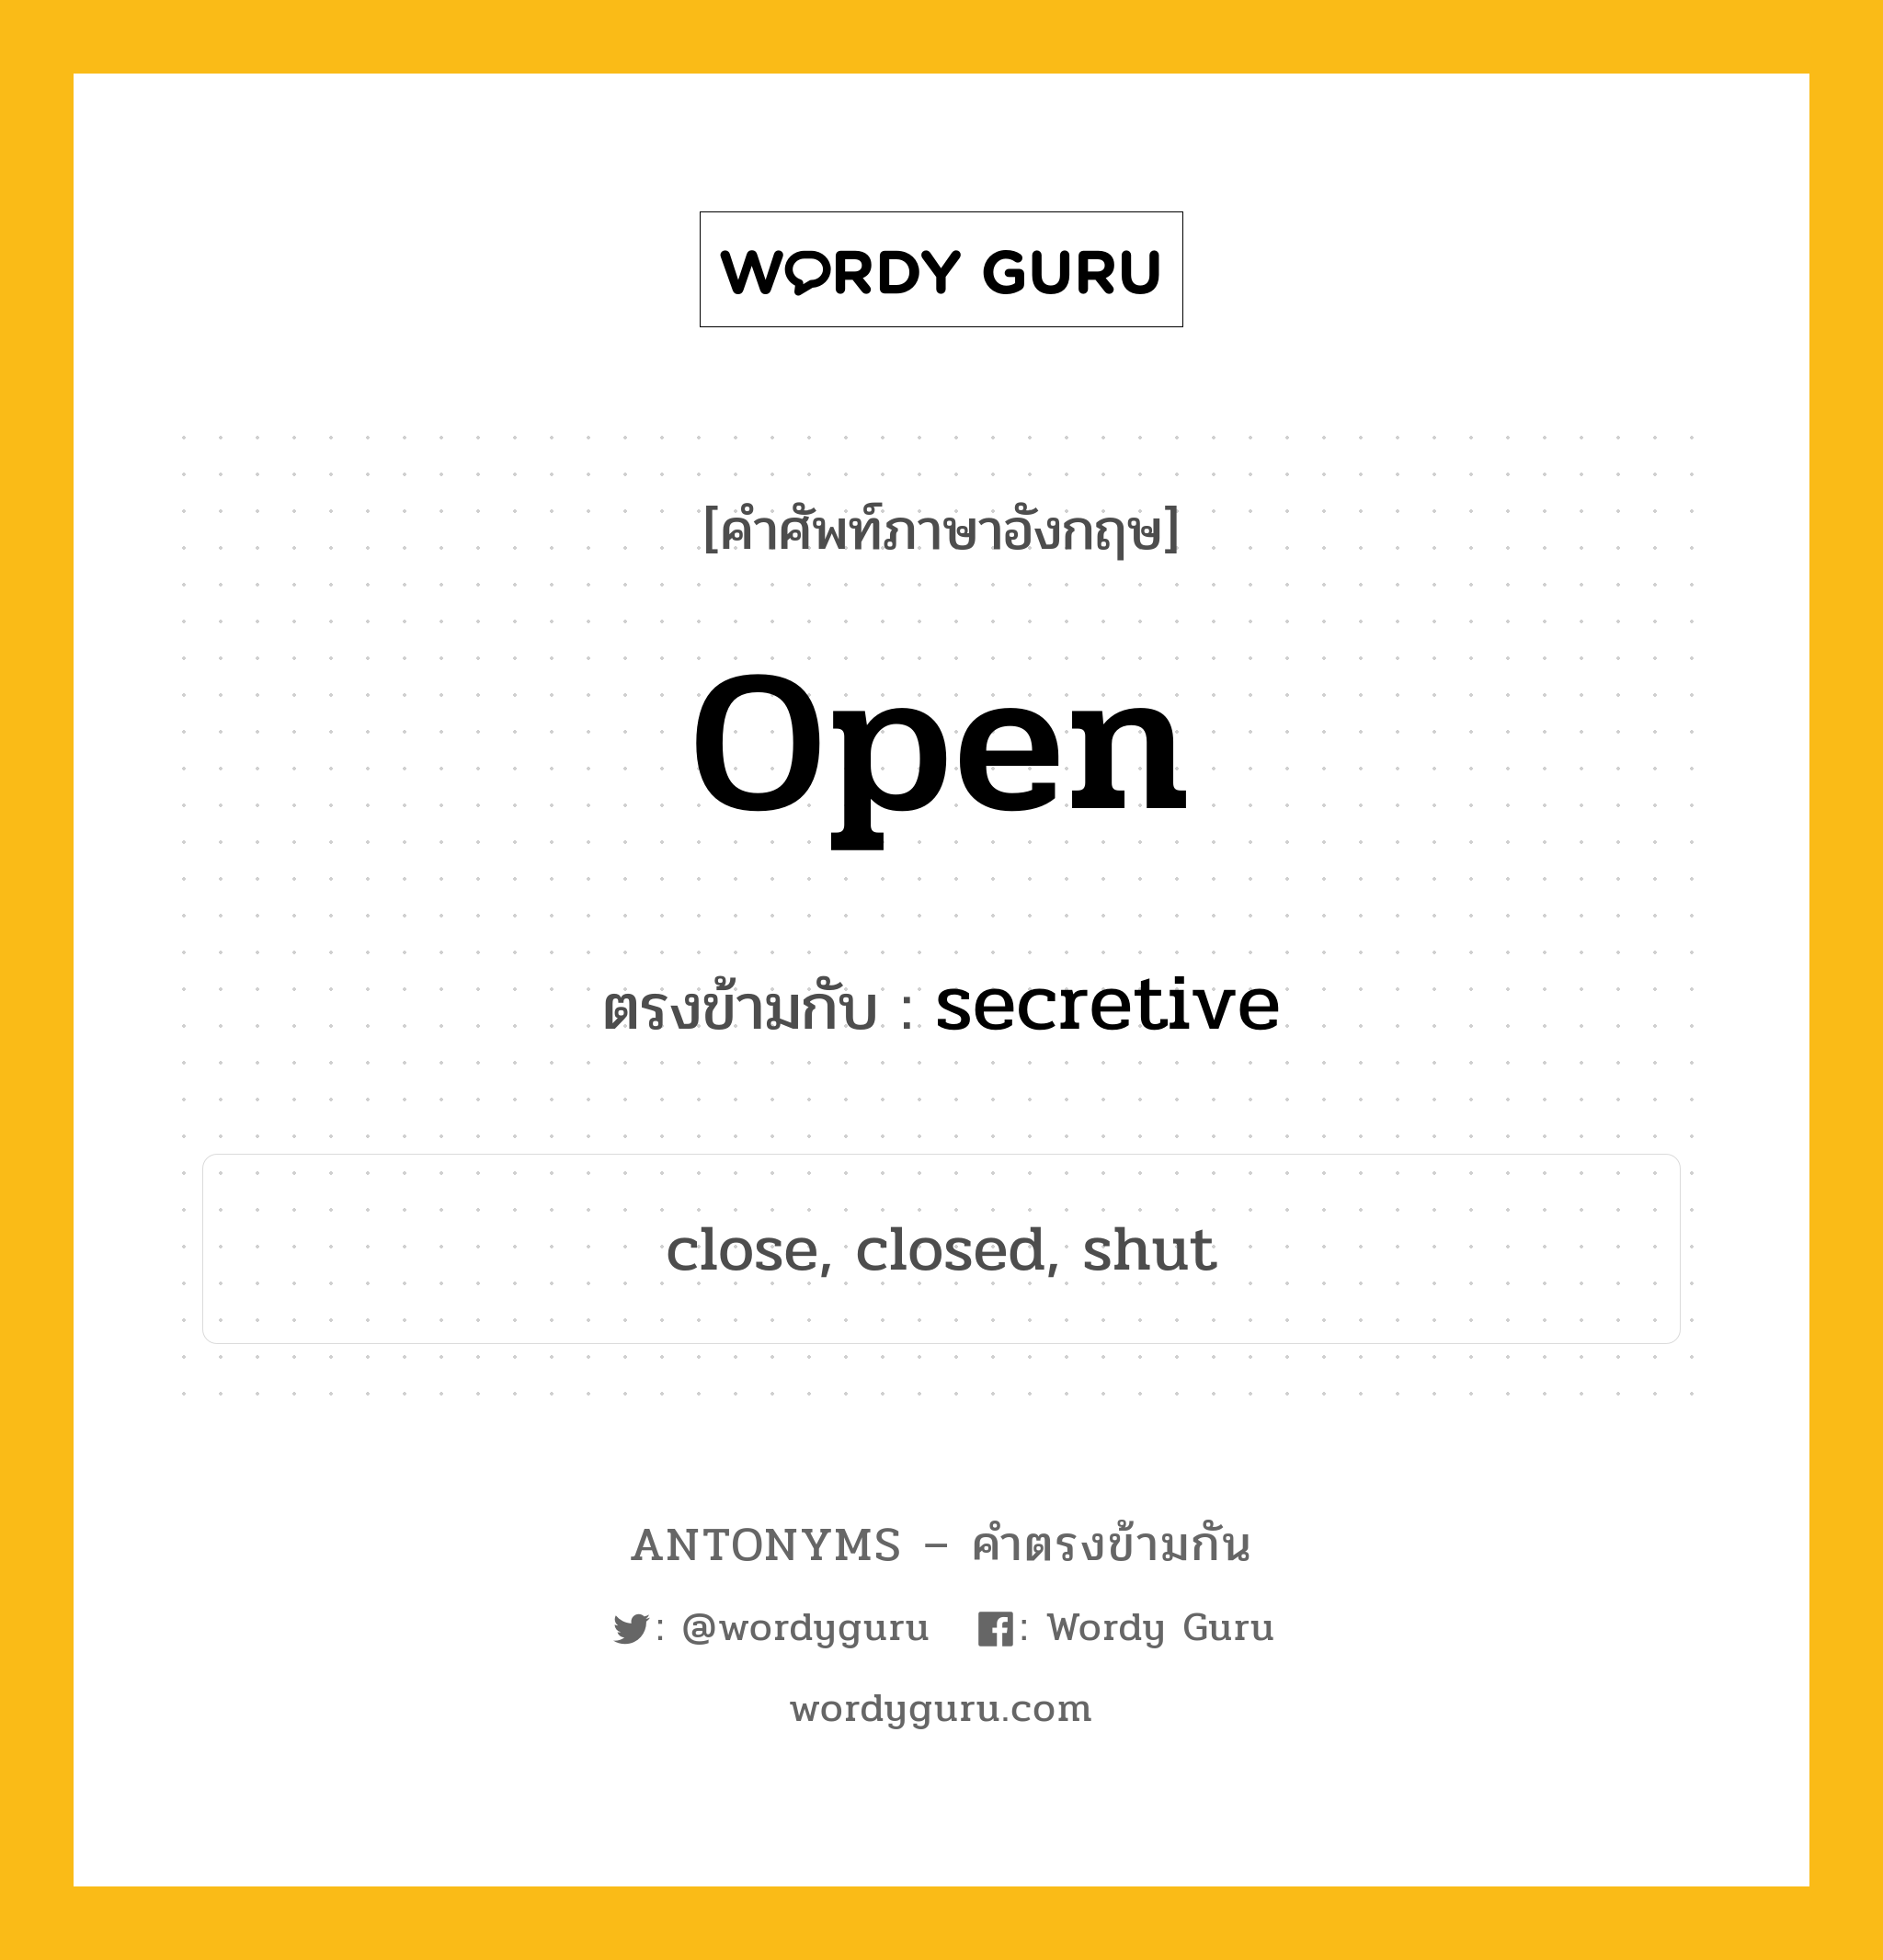 open เป็นคำตรงข้ามกับคำไหนบ้าง?, คำศัพท์ภาษาอังกฤษ open ตรงข้ามกับ secretive หมวด secretive